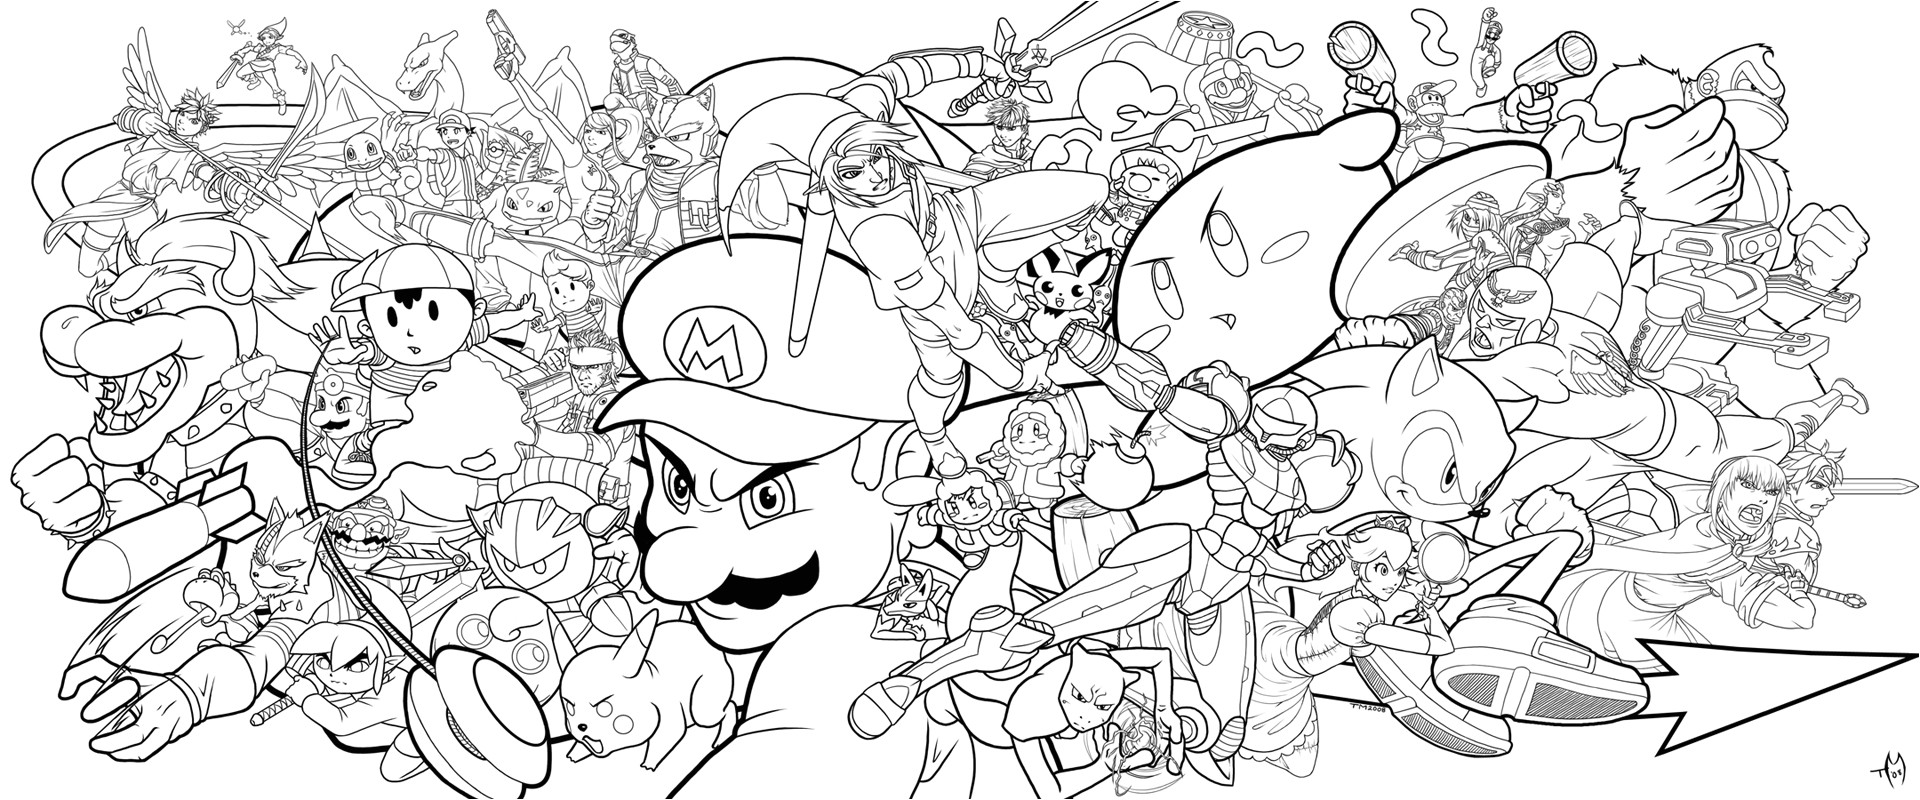 Coloriage Super Smash Bros Brawl Super Smash Bros Brawl Coloring Pages